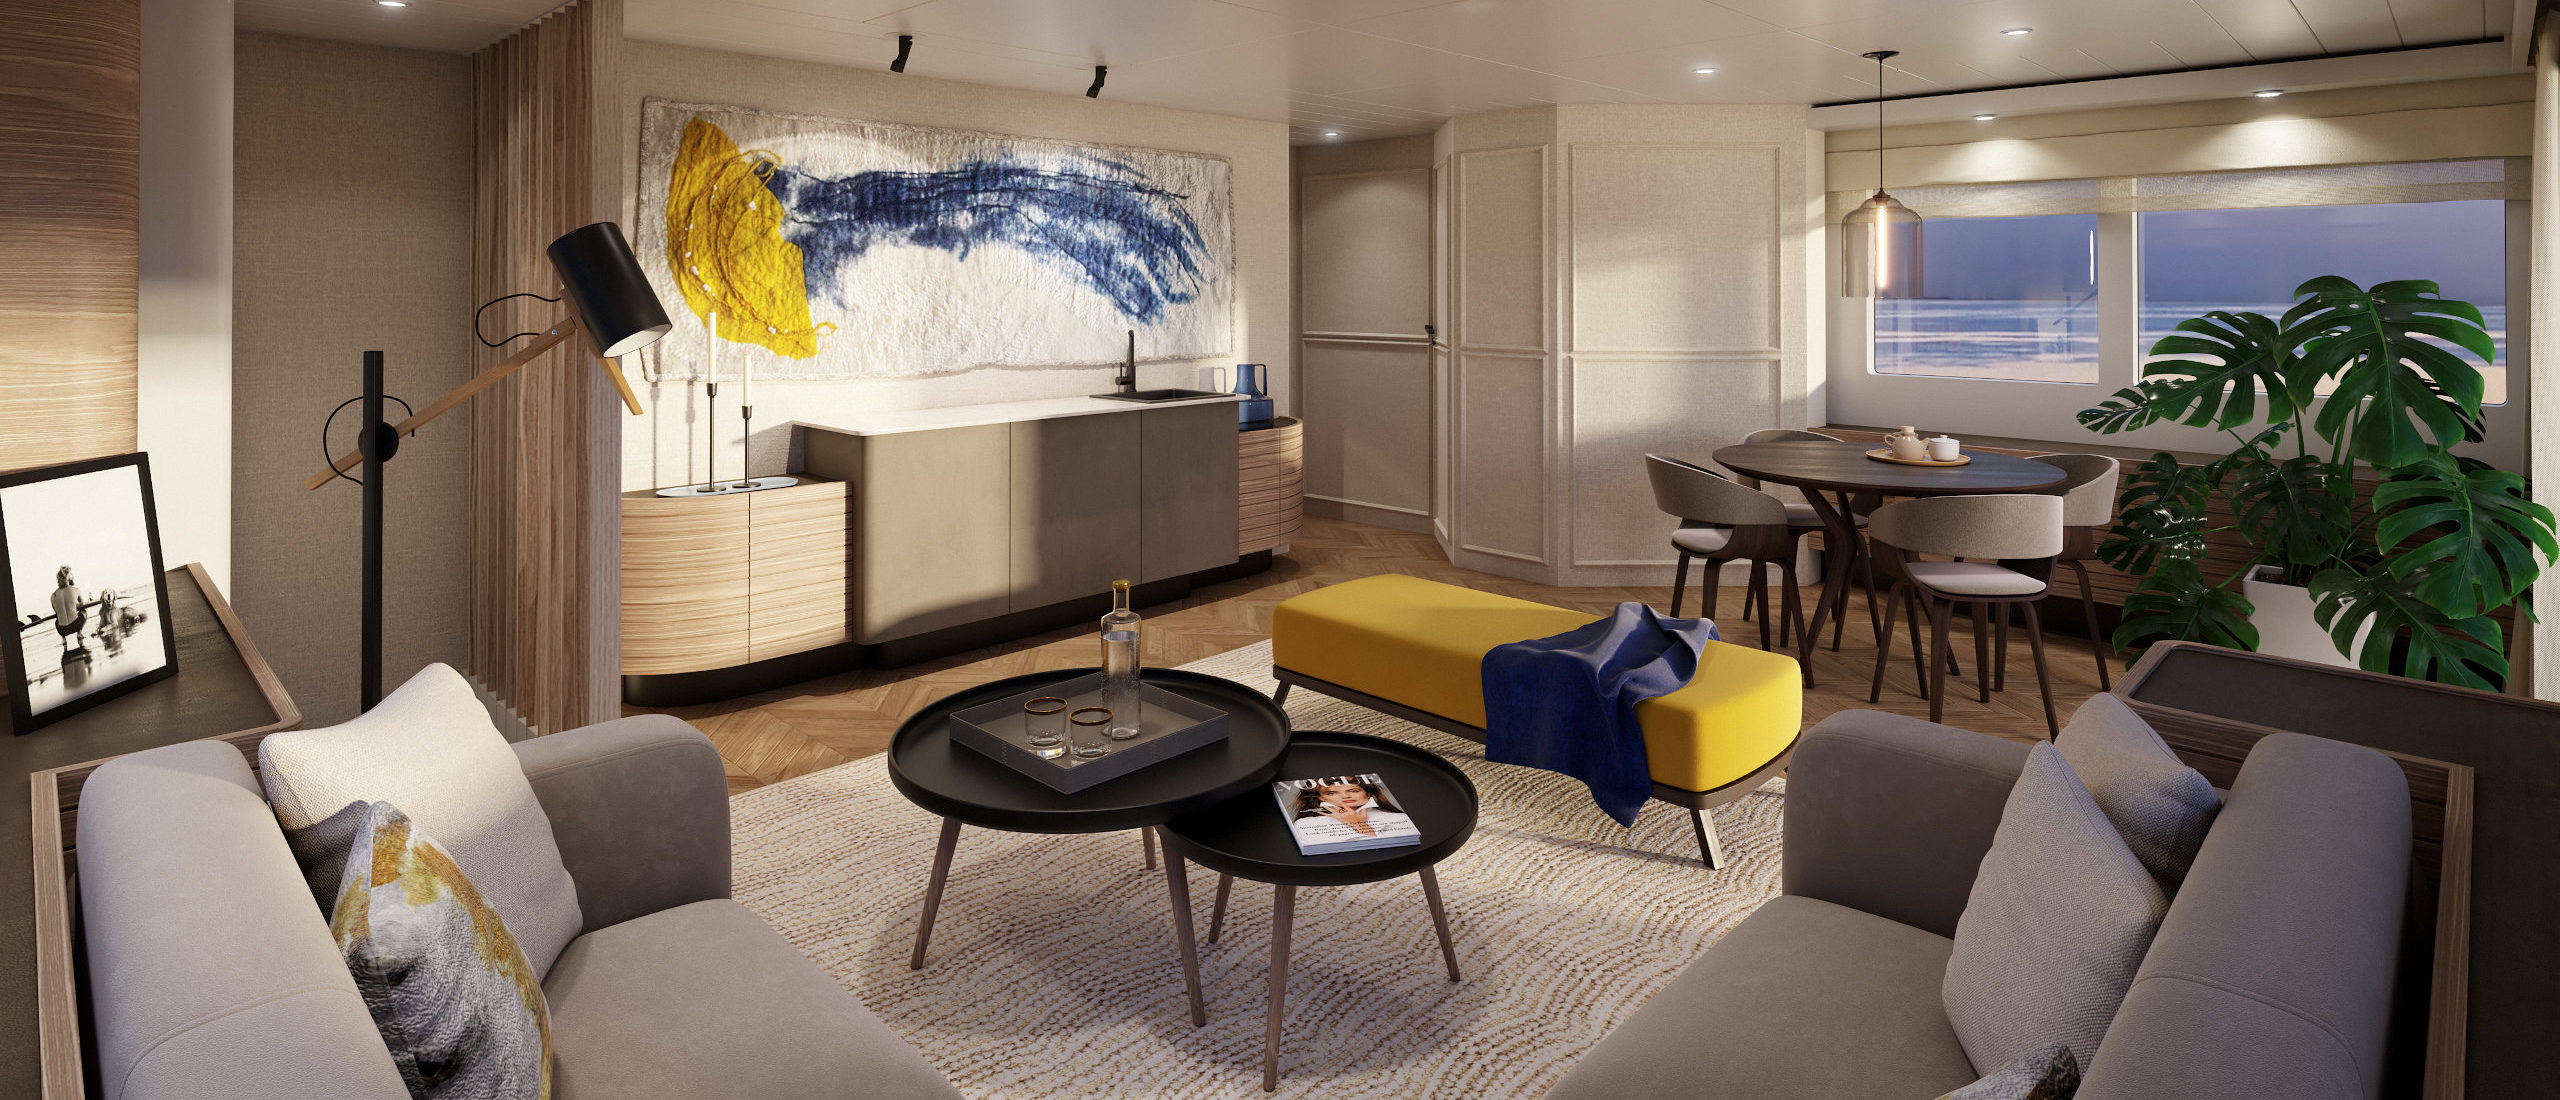 Vripack - Nordhavn 80 - Interior family centric room - Scandinavian design